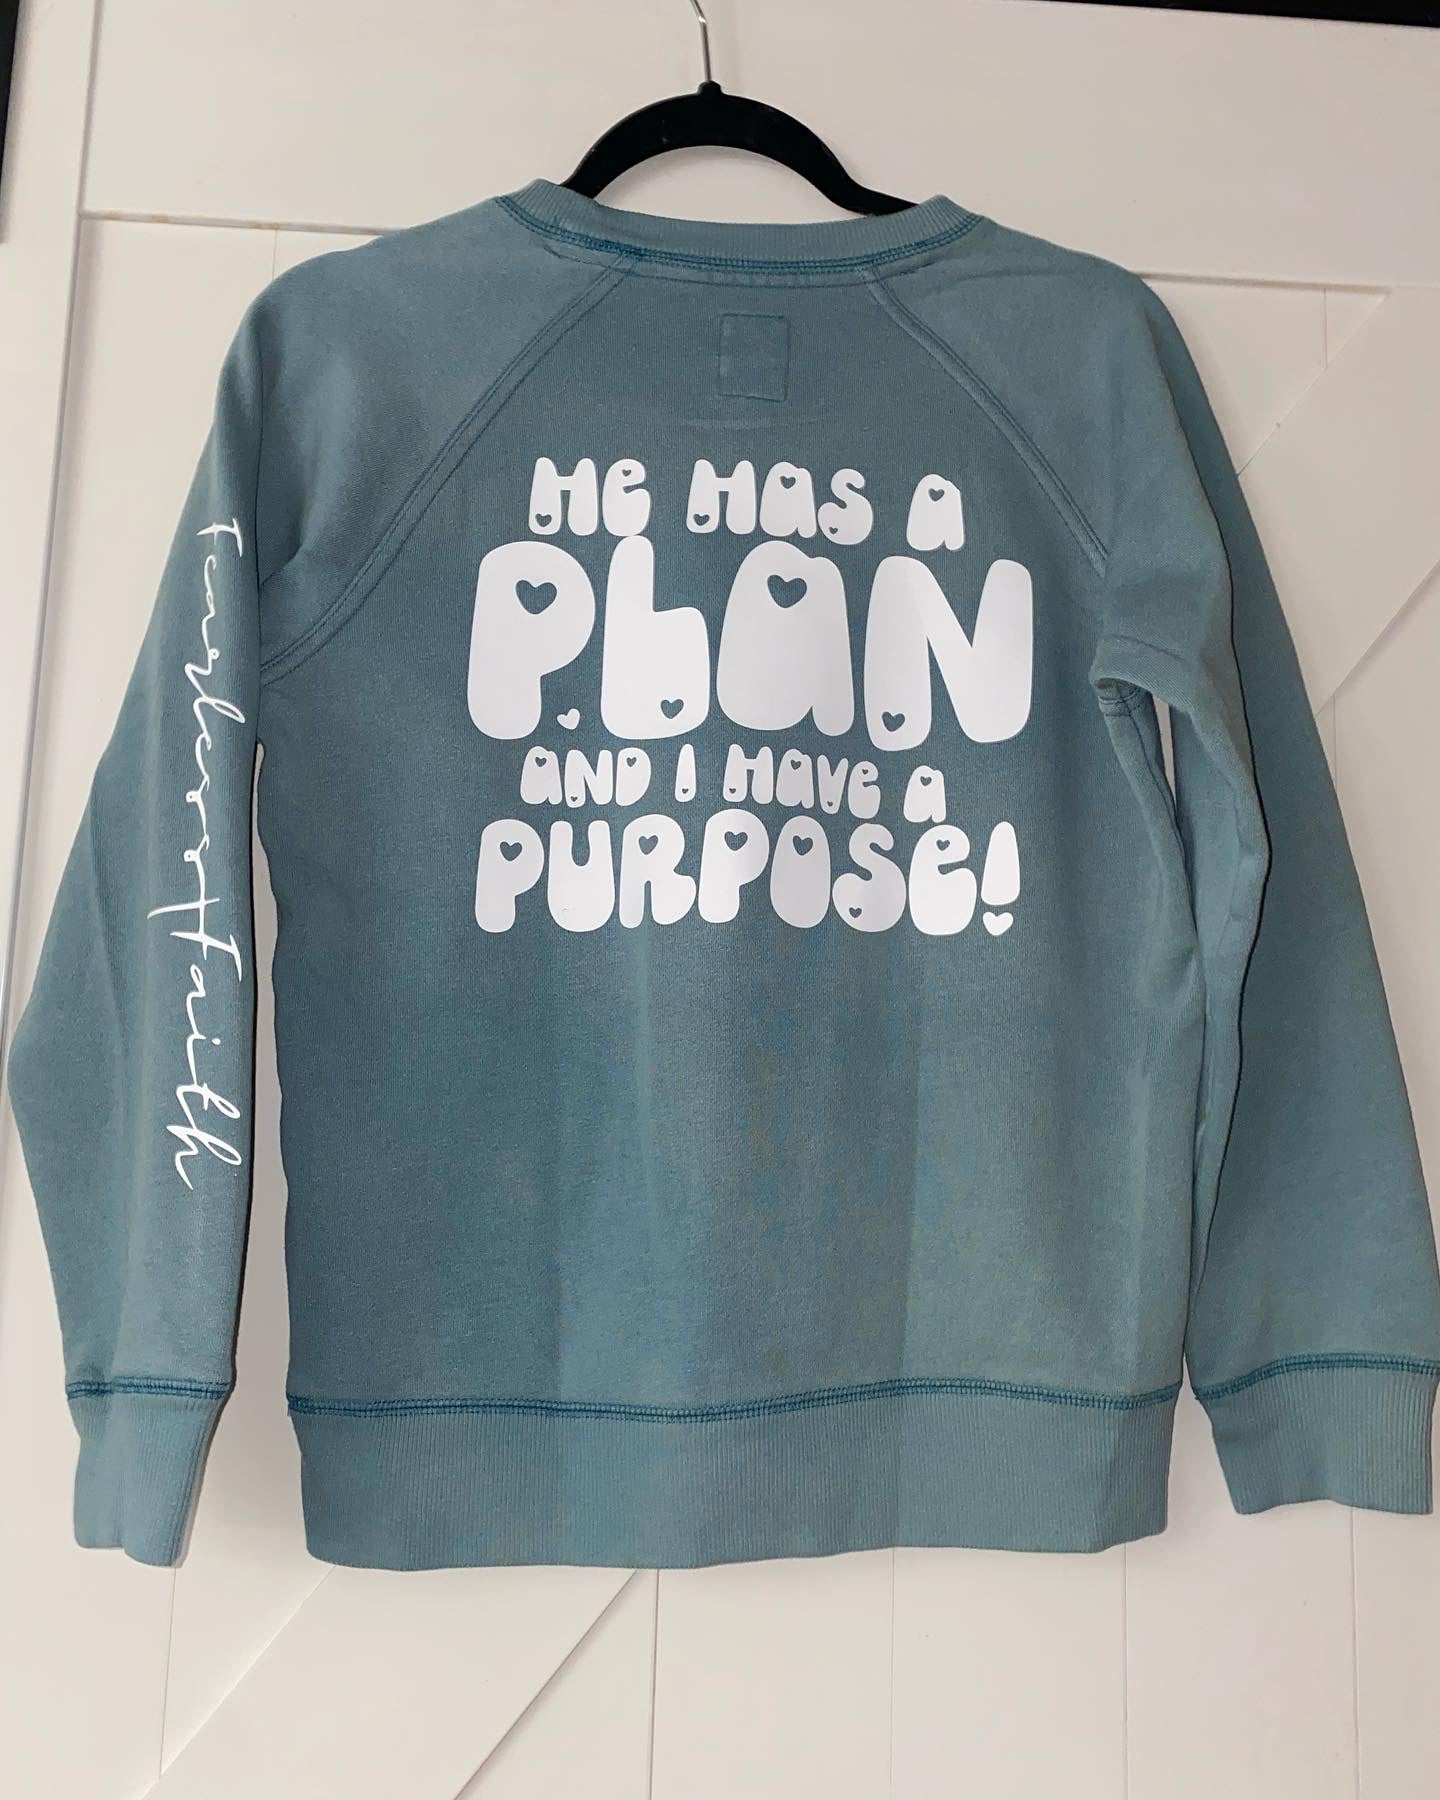 Purpose sweatshirt